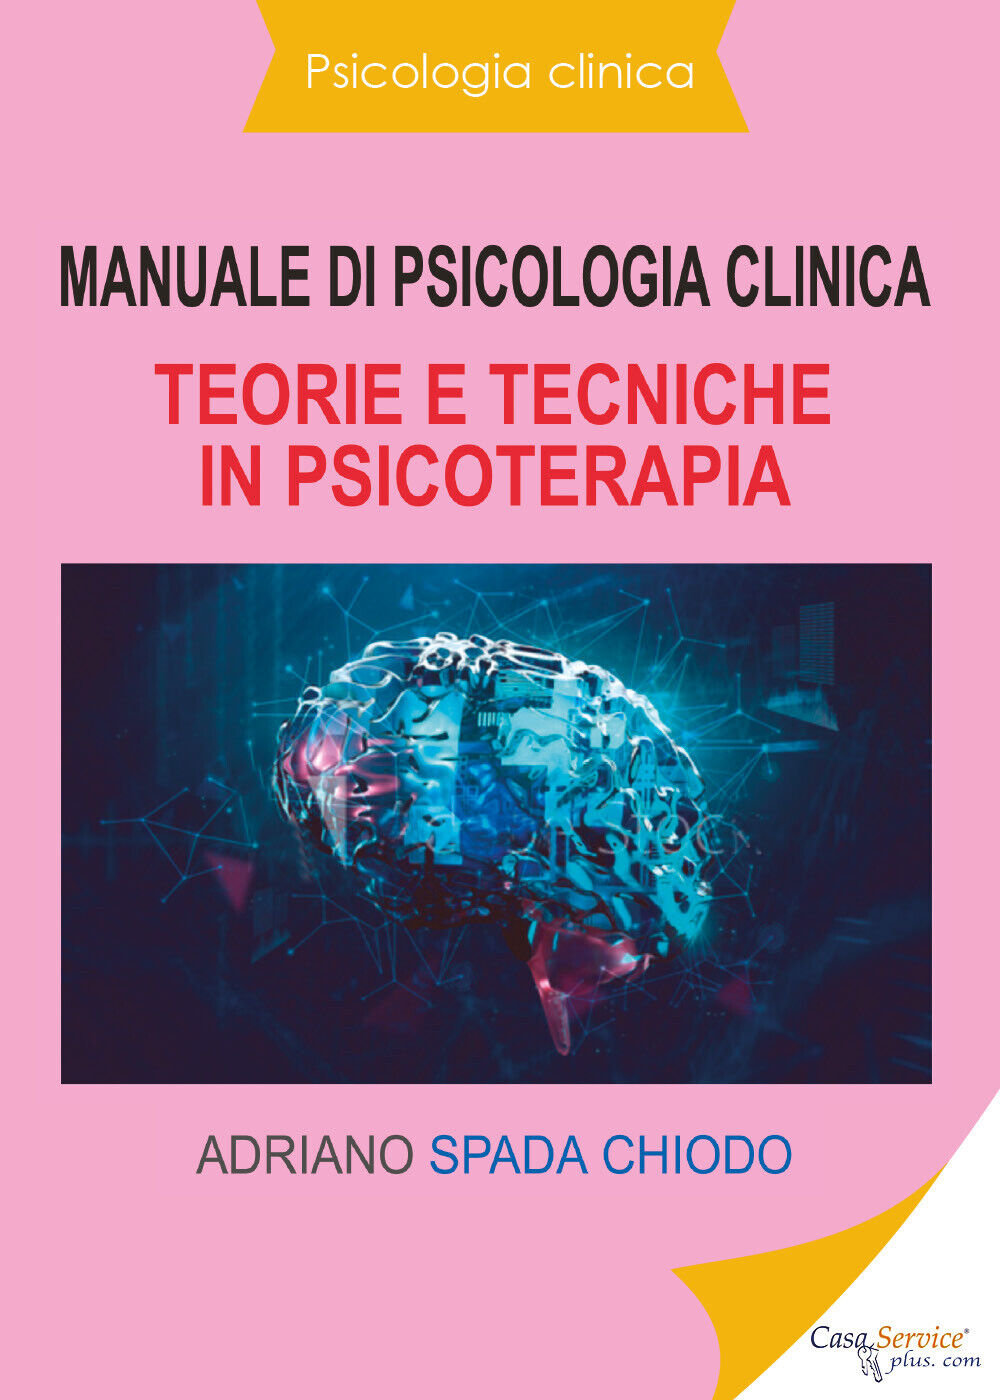 Manuale di psicologia clinica. Teorie e tecniche in psicoterapia di Adriano Spad libro usato